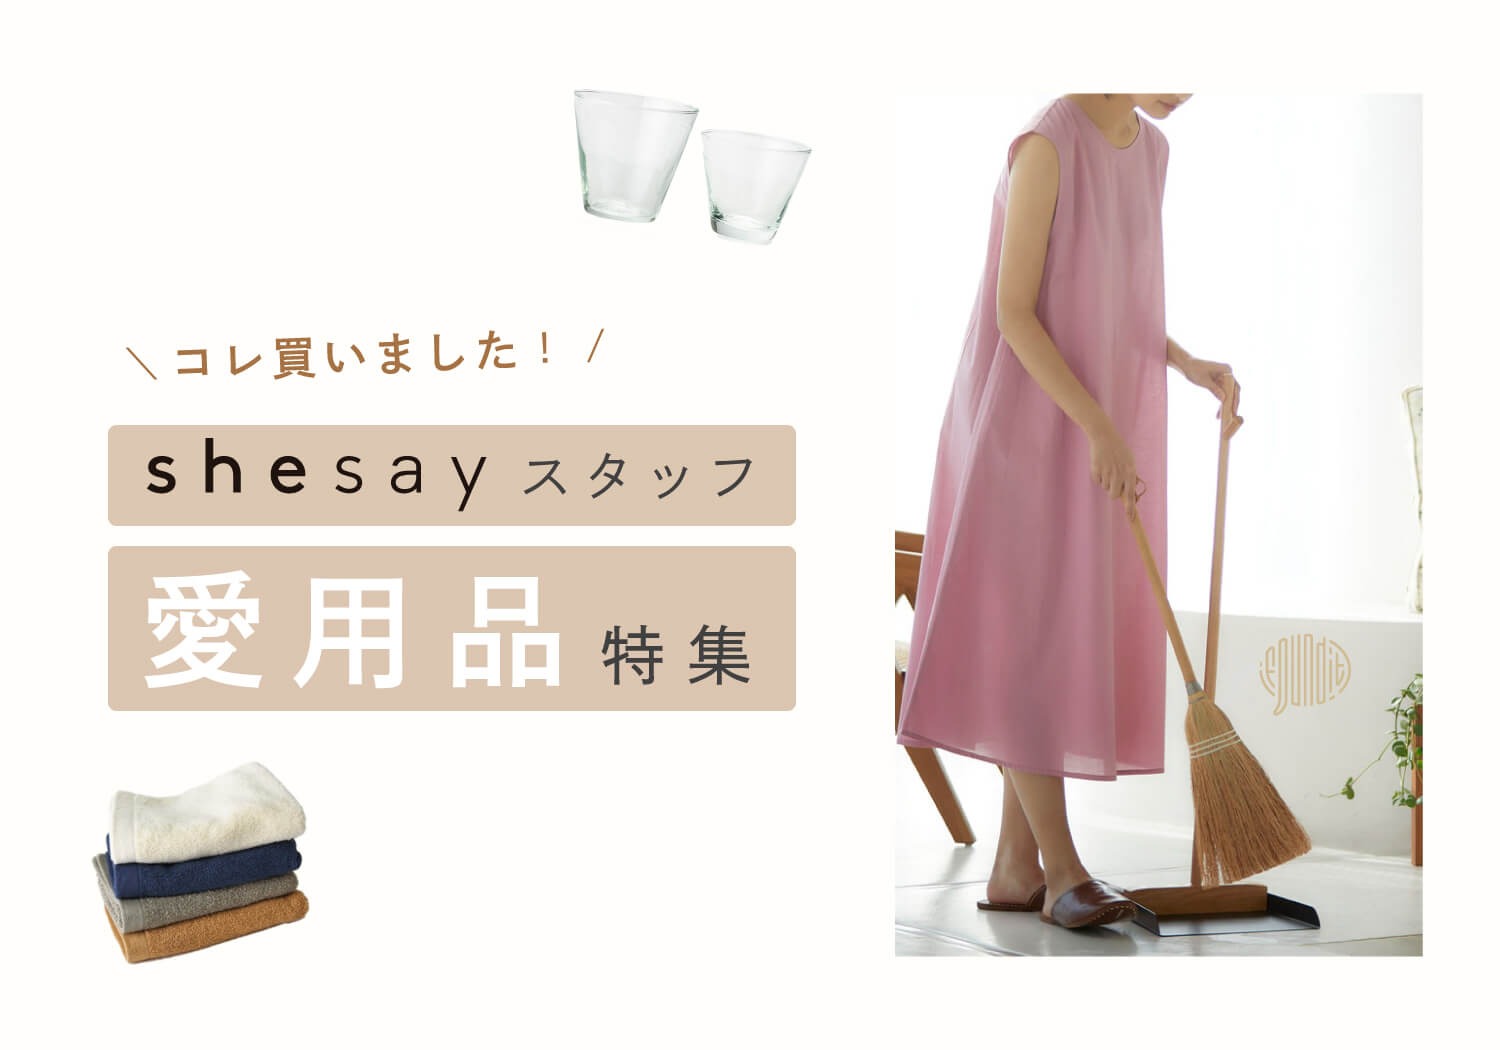 shesay(志成販売)｜インテリア・ファッション雑貨の卸仕入れ専用サイト